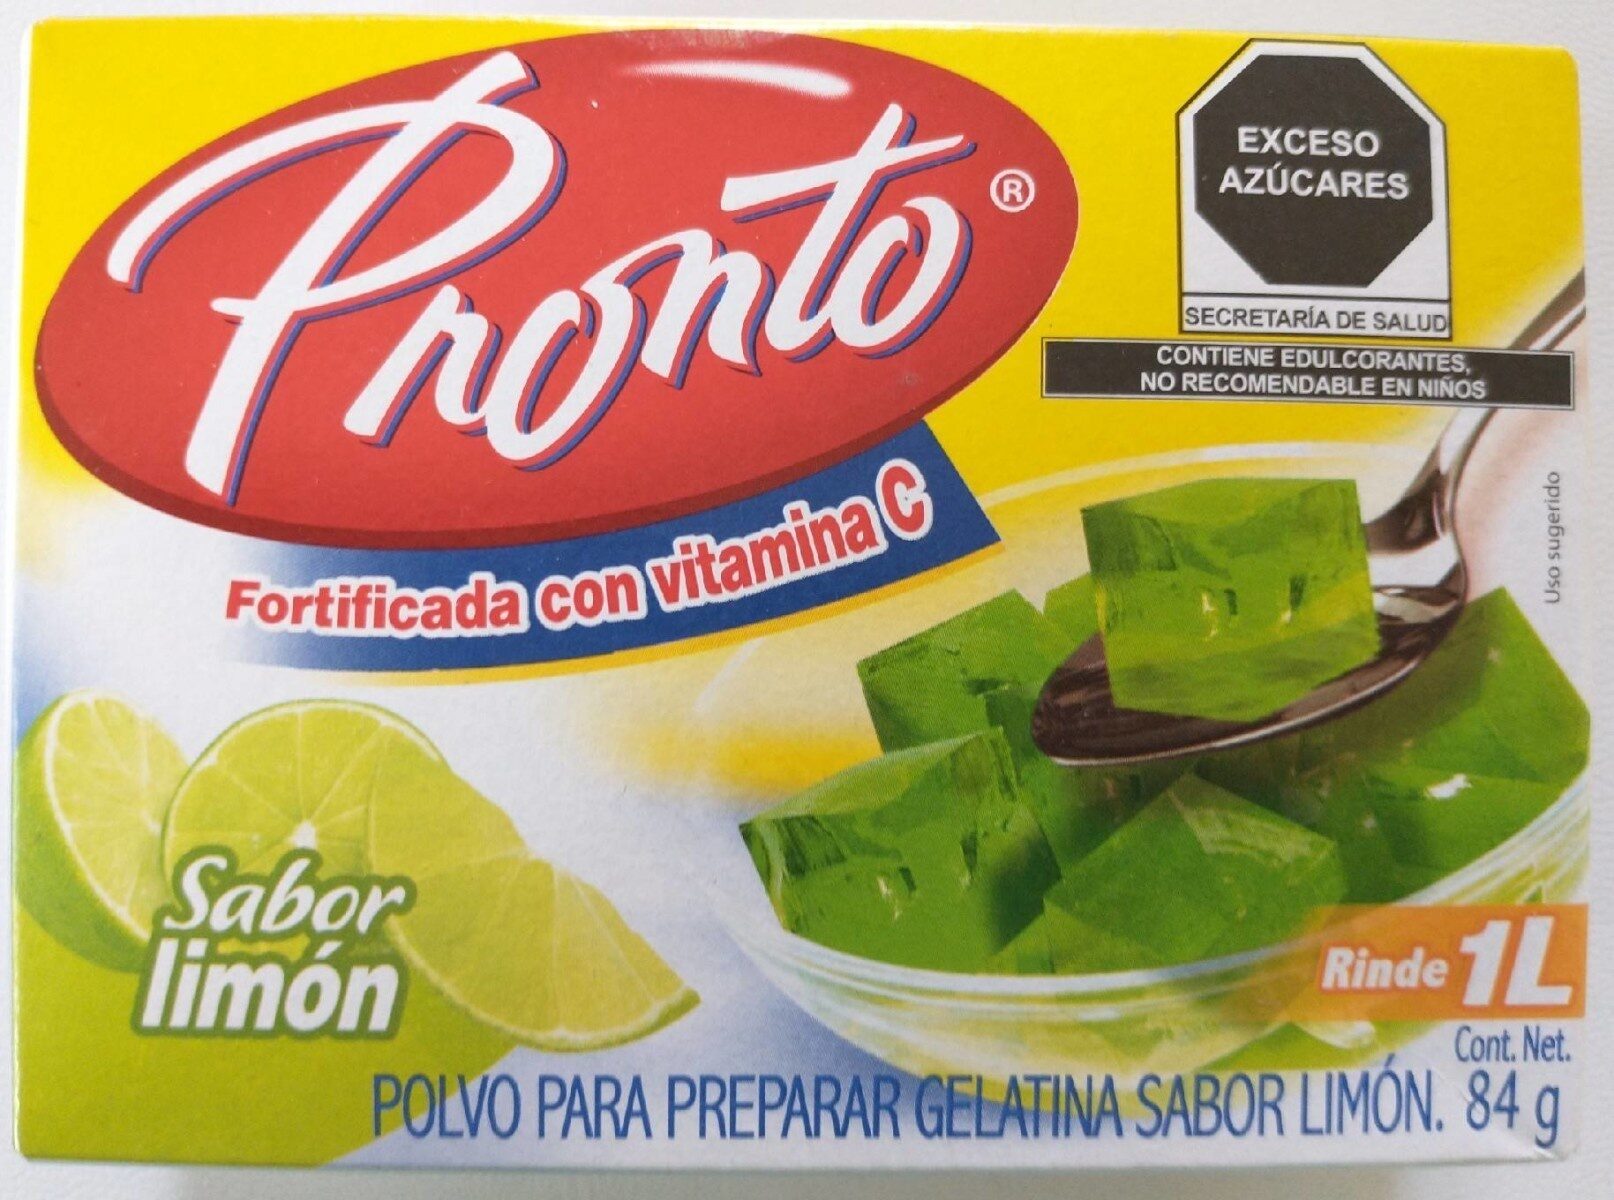 Pronto sabor limón - Product - es